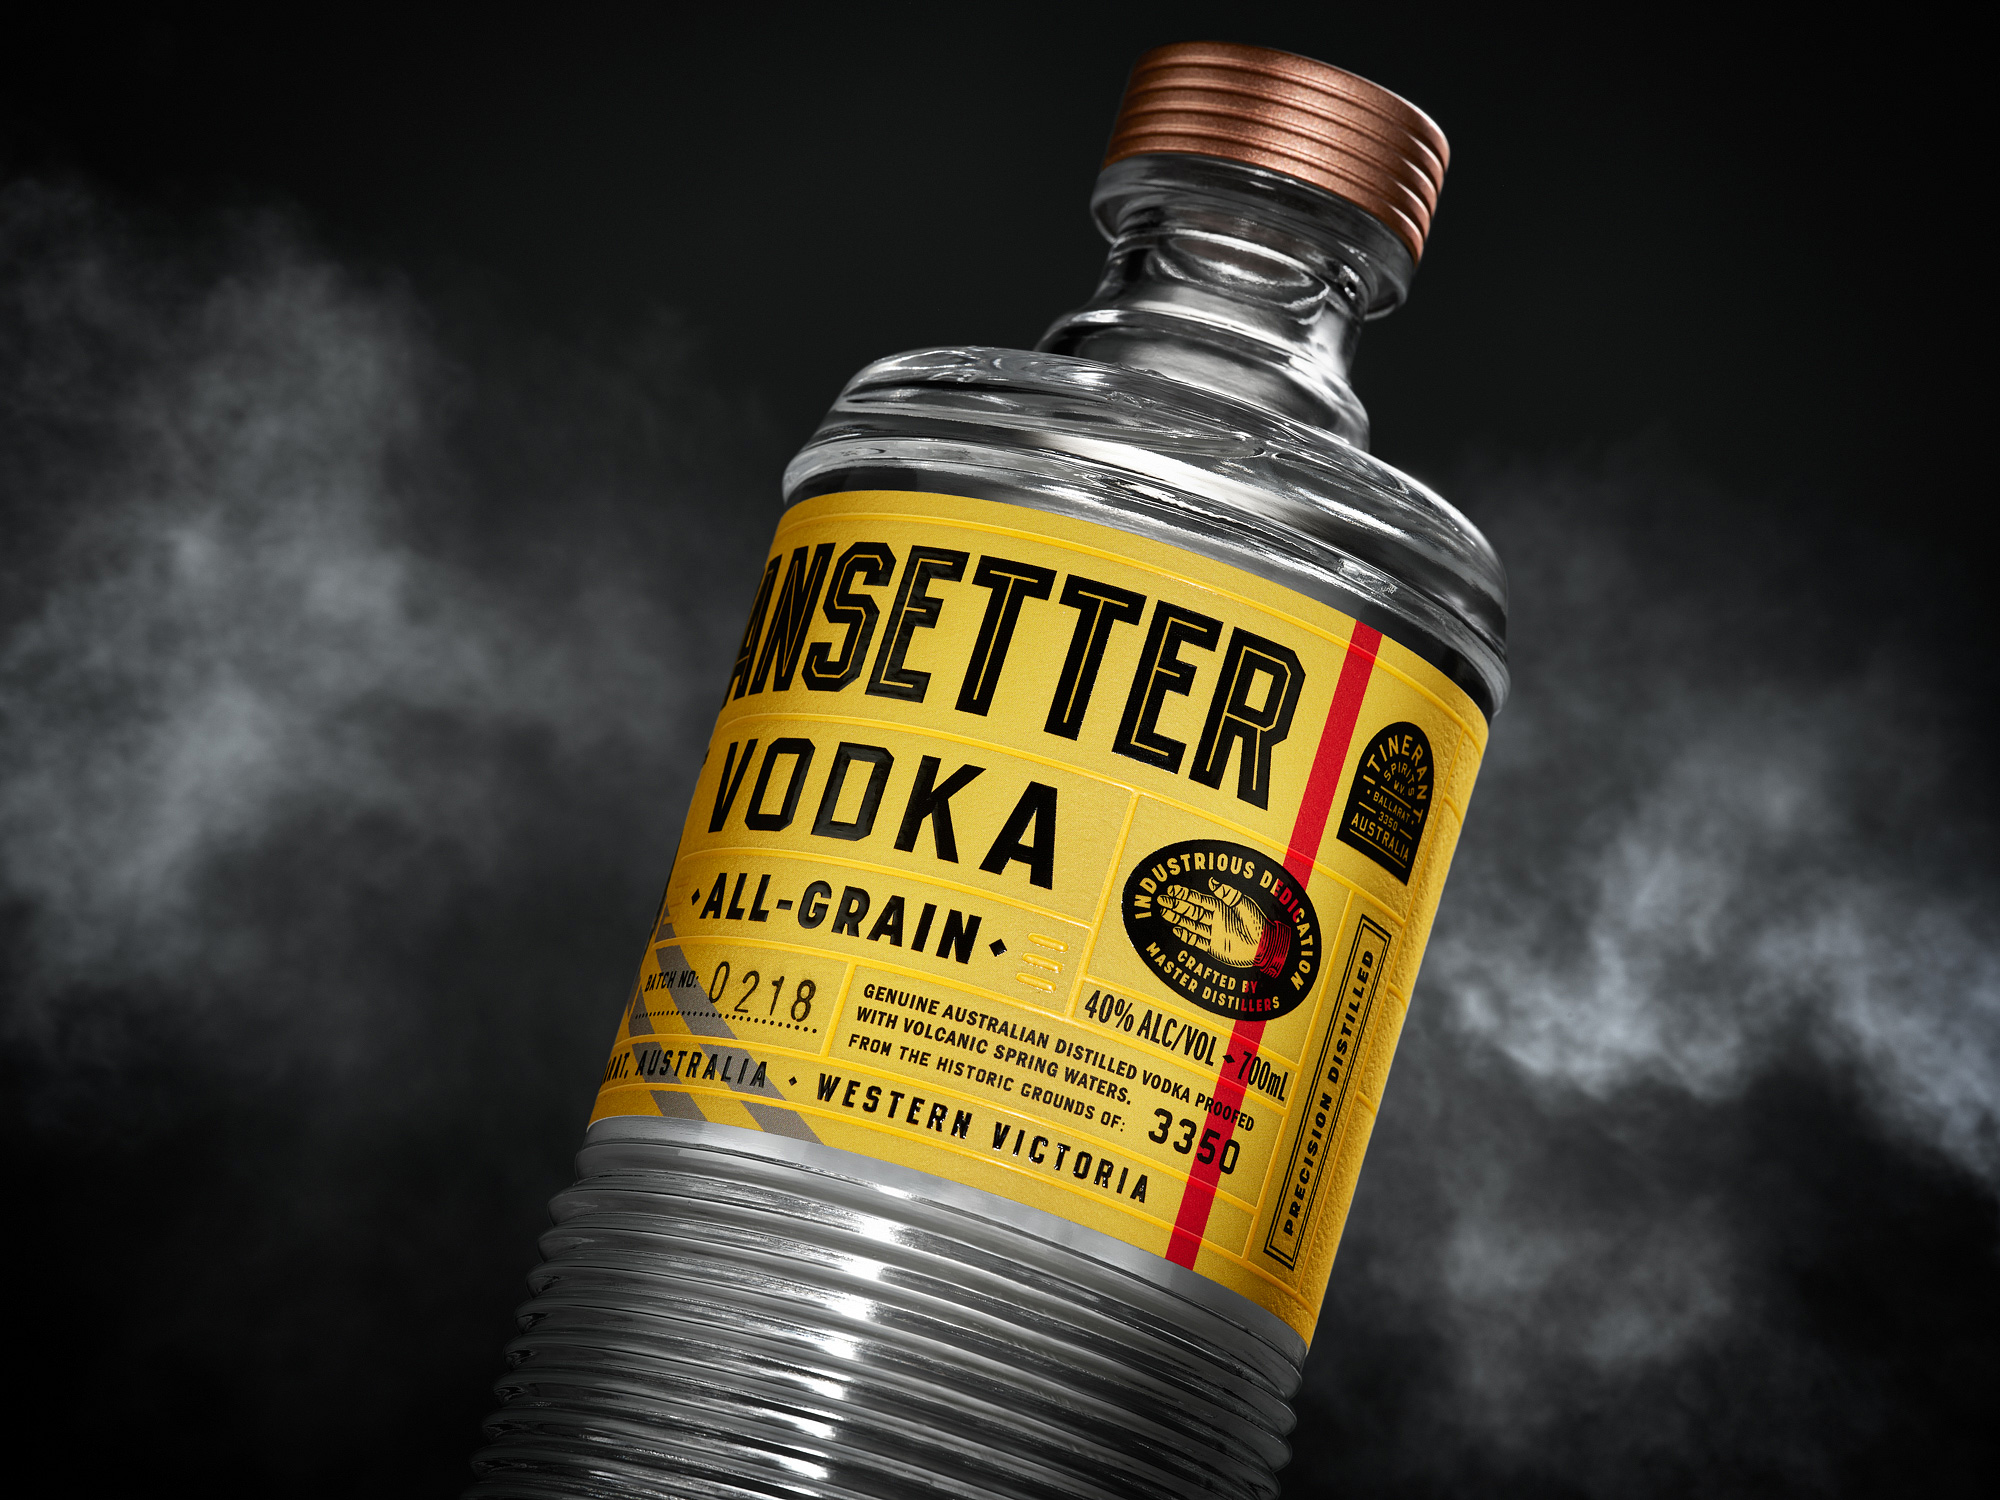 Branding and package design for Australian Vodka